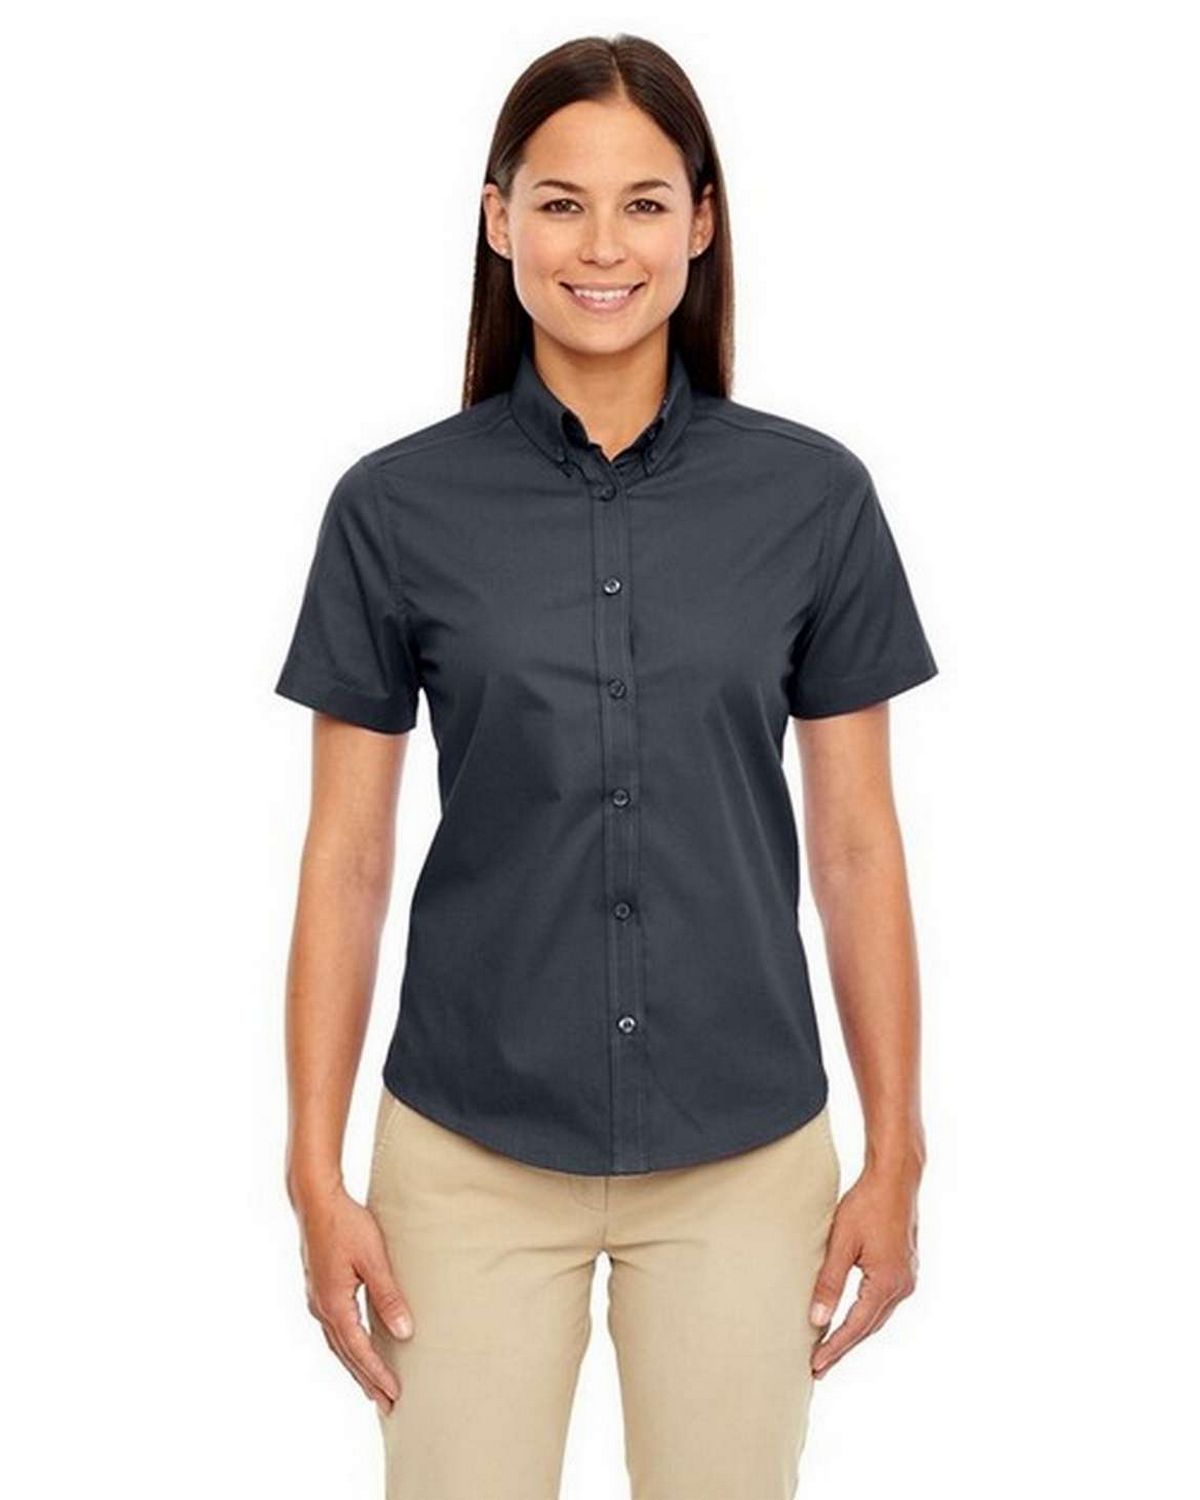 Core365 78194 Optimum Ladies Short Sleeve Twill Shirt